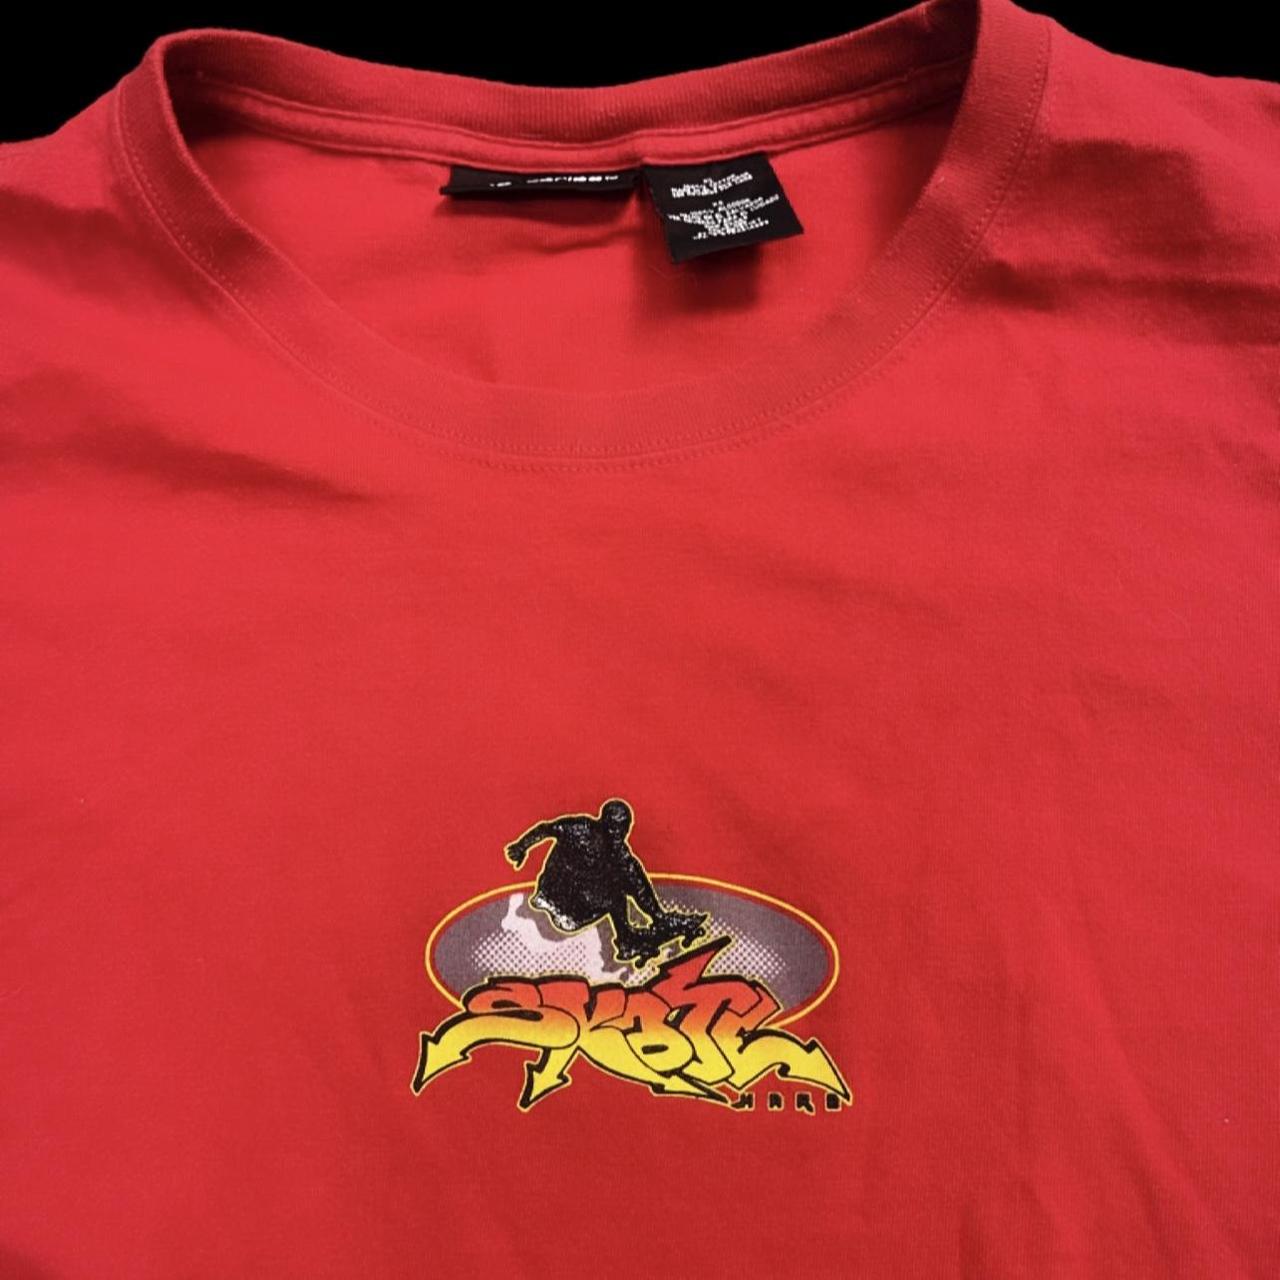 Product Image 3 - Vintage AOP Skate T-Shirt, Men’s